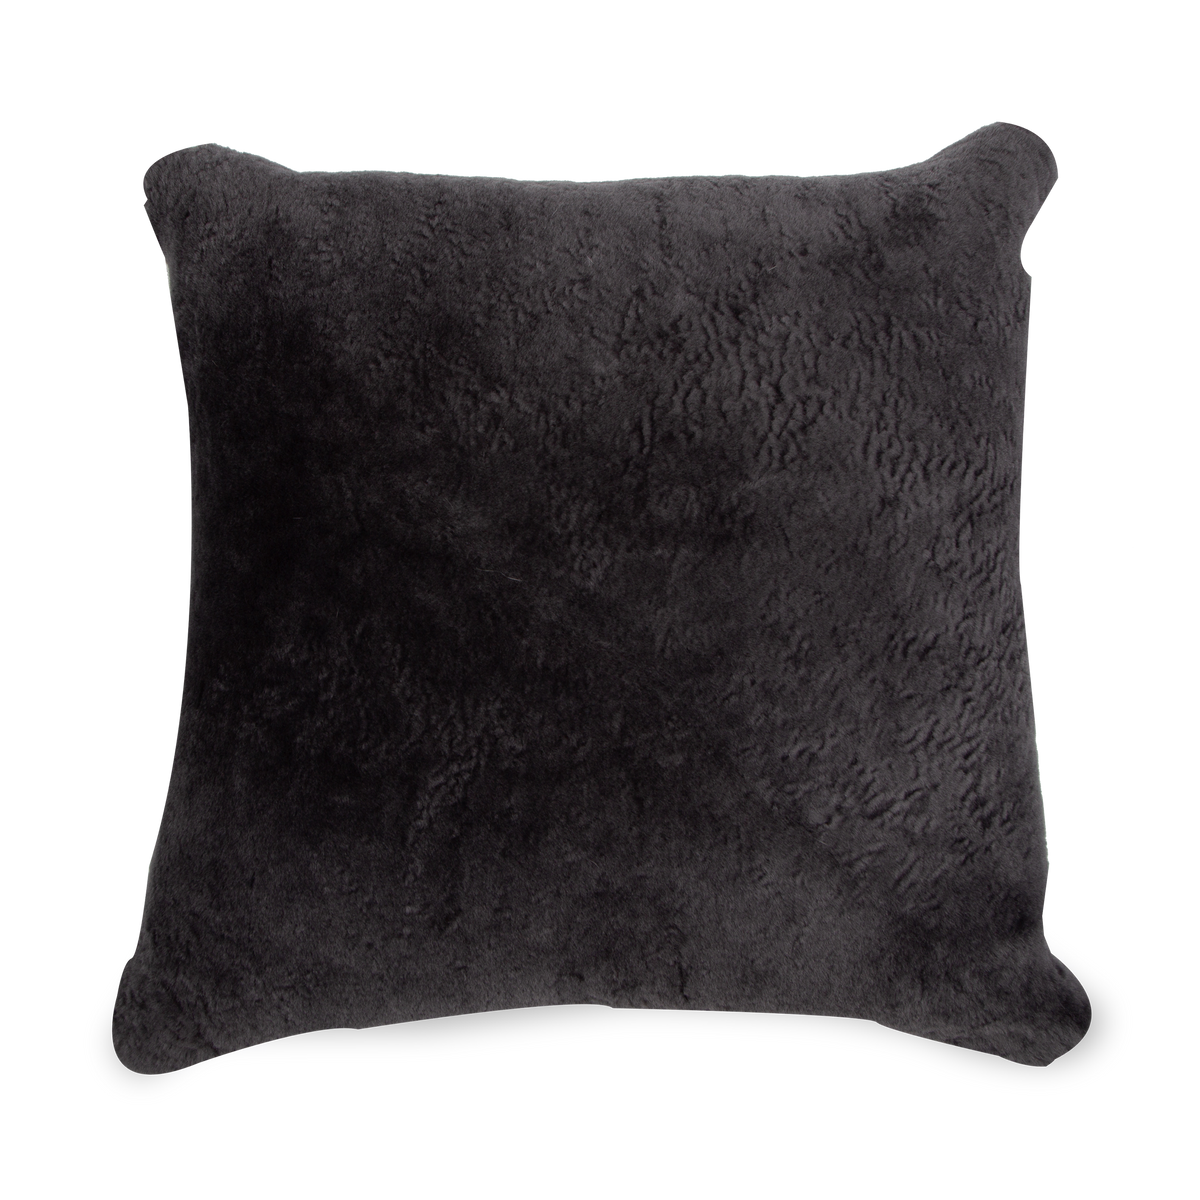 Shorn Sheepskin Pillow